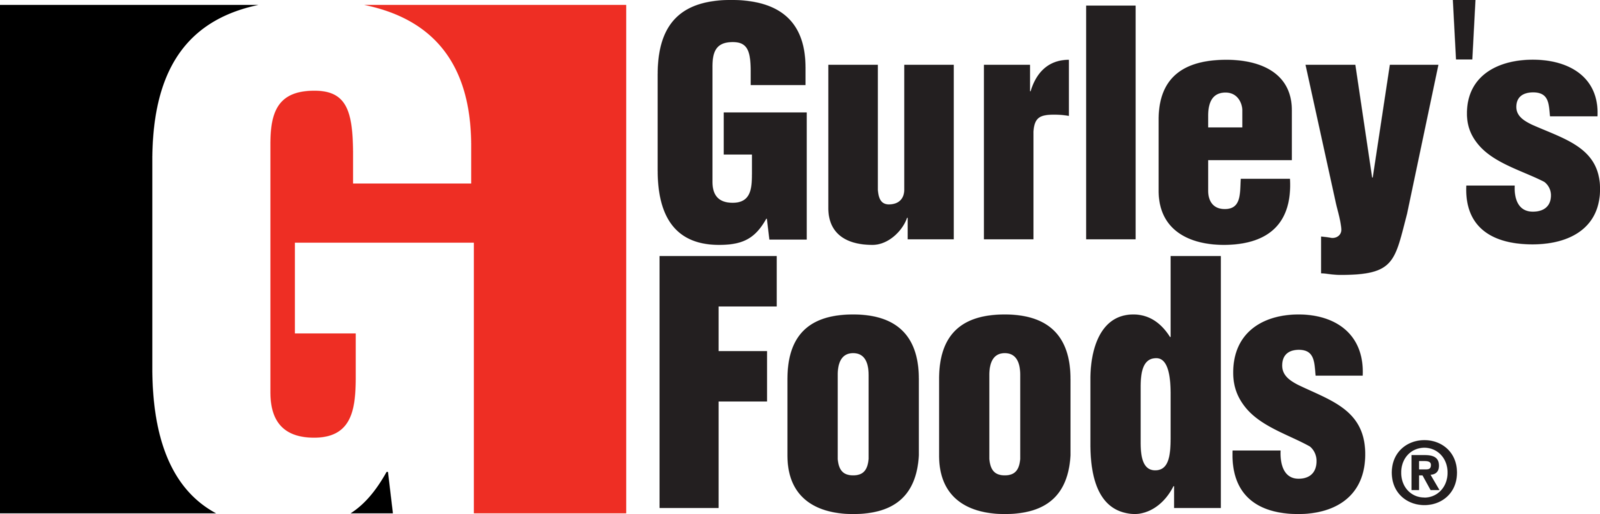 Gurley's_Foods_logo 2